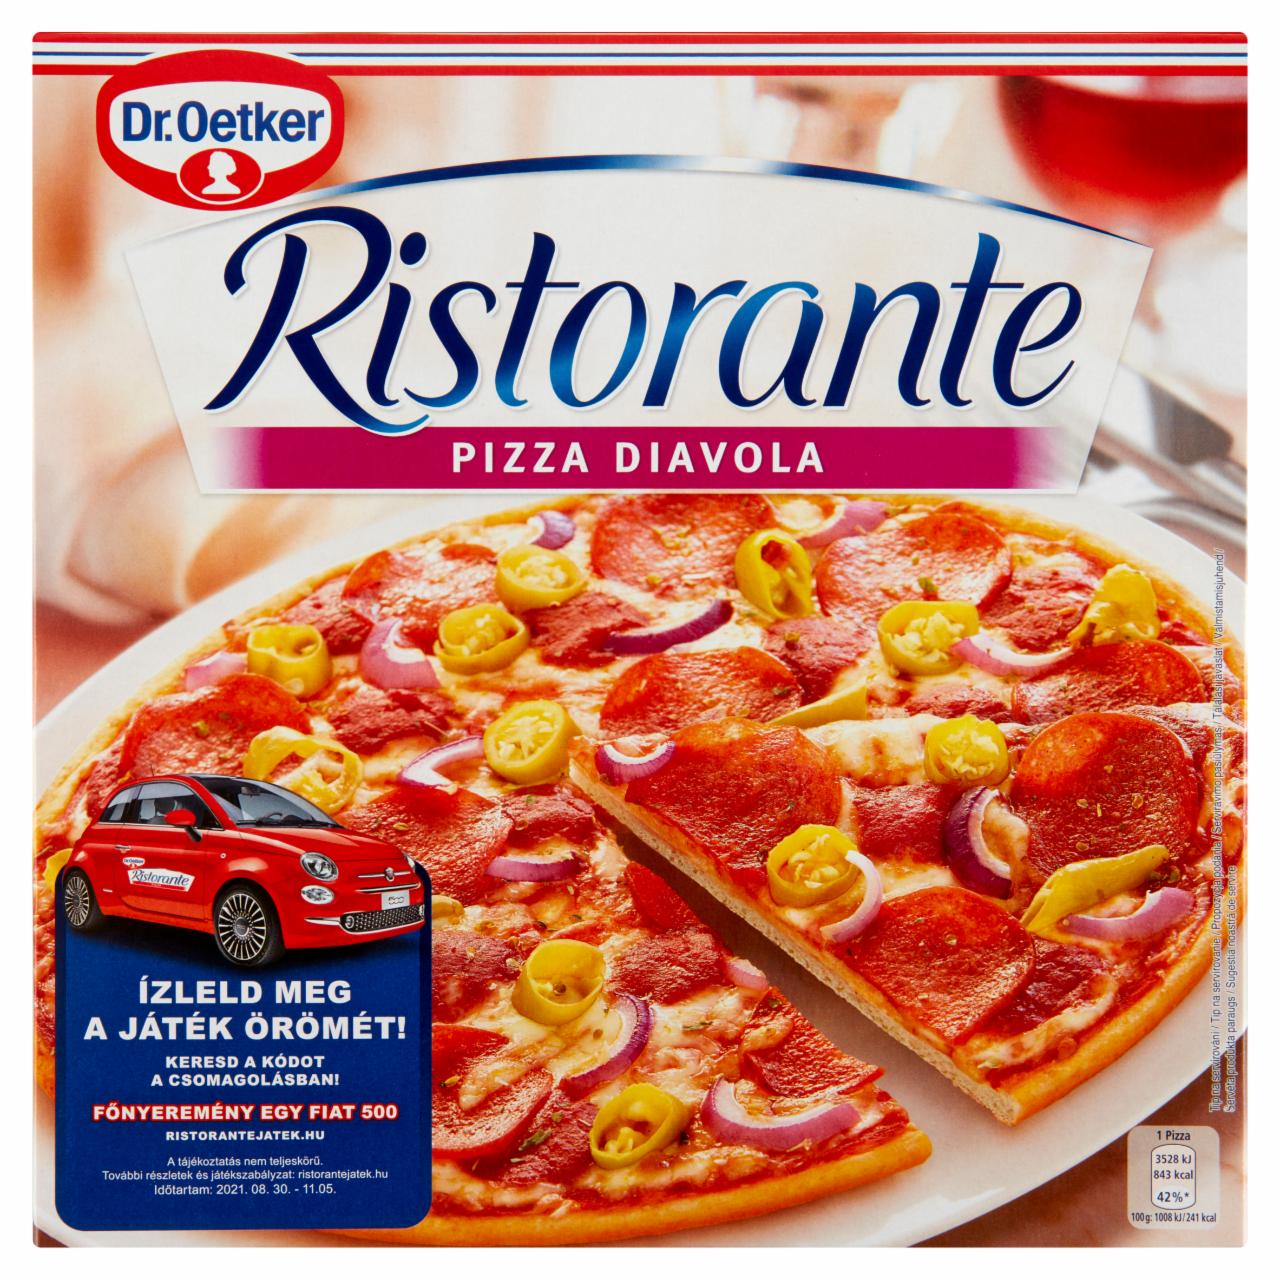 Képek - Dr. Oetker Ristorante Pizza Diavola gyorsfagyasztott pizza csípős szalámival, chili paprikával 350 g